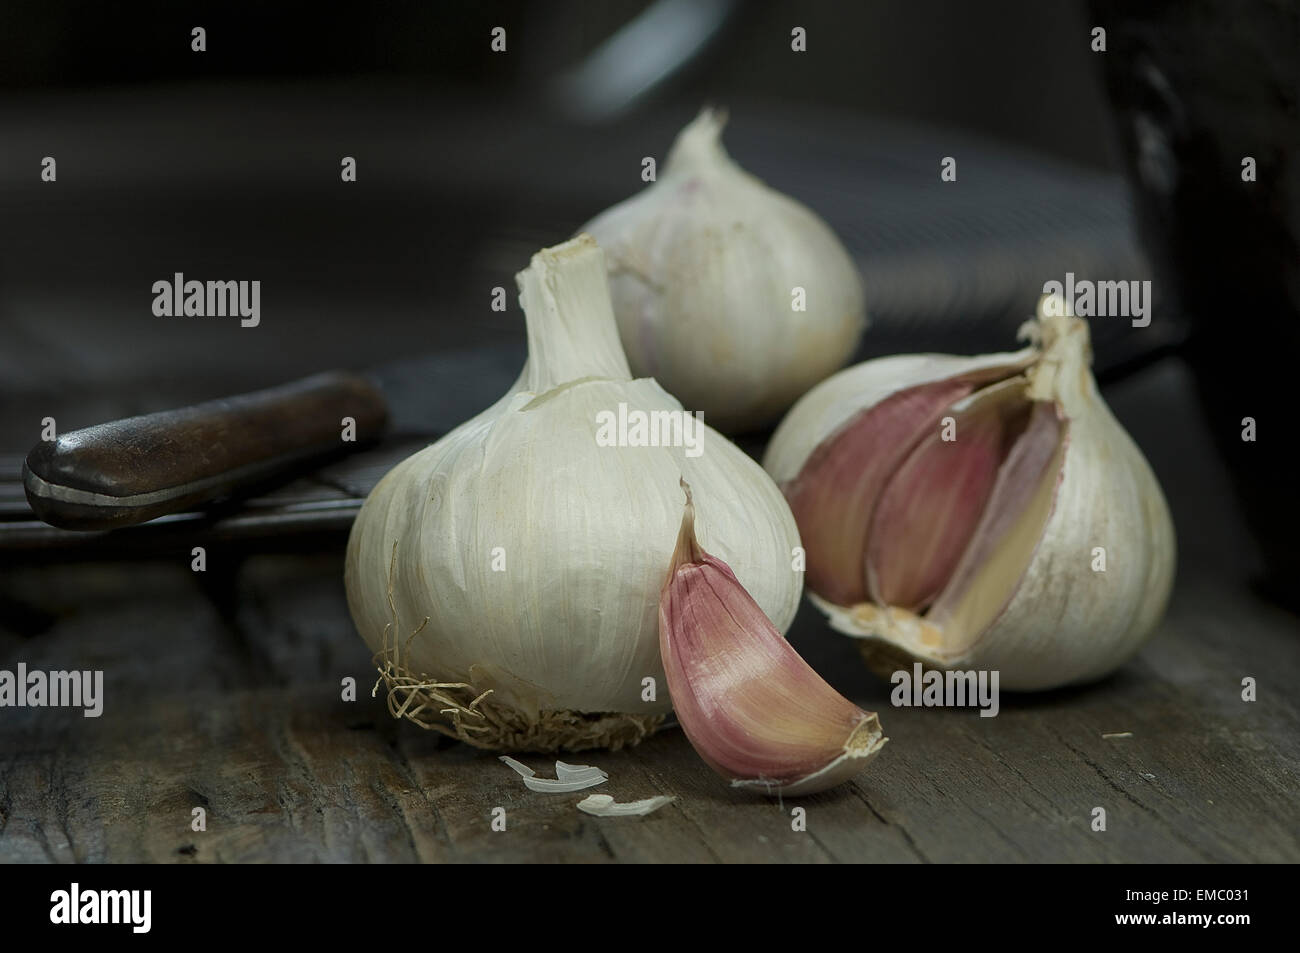 Garlic bulbs and garlic clove Stock Photo